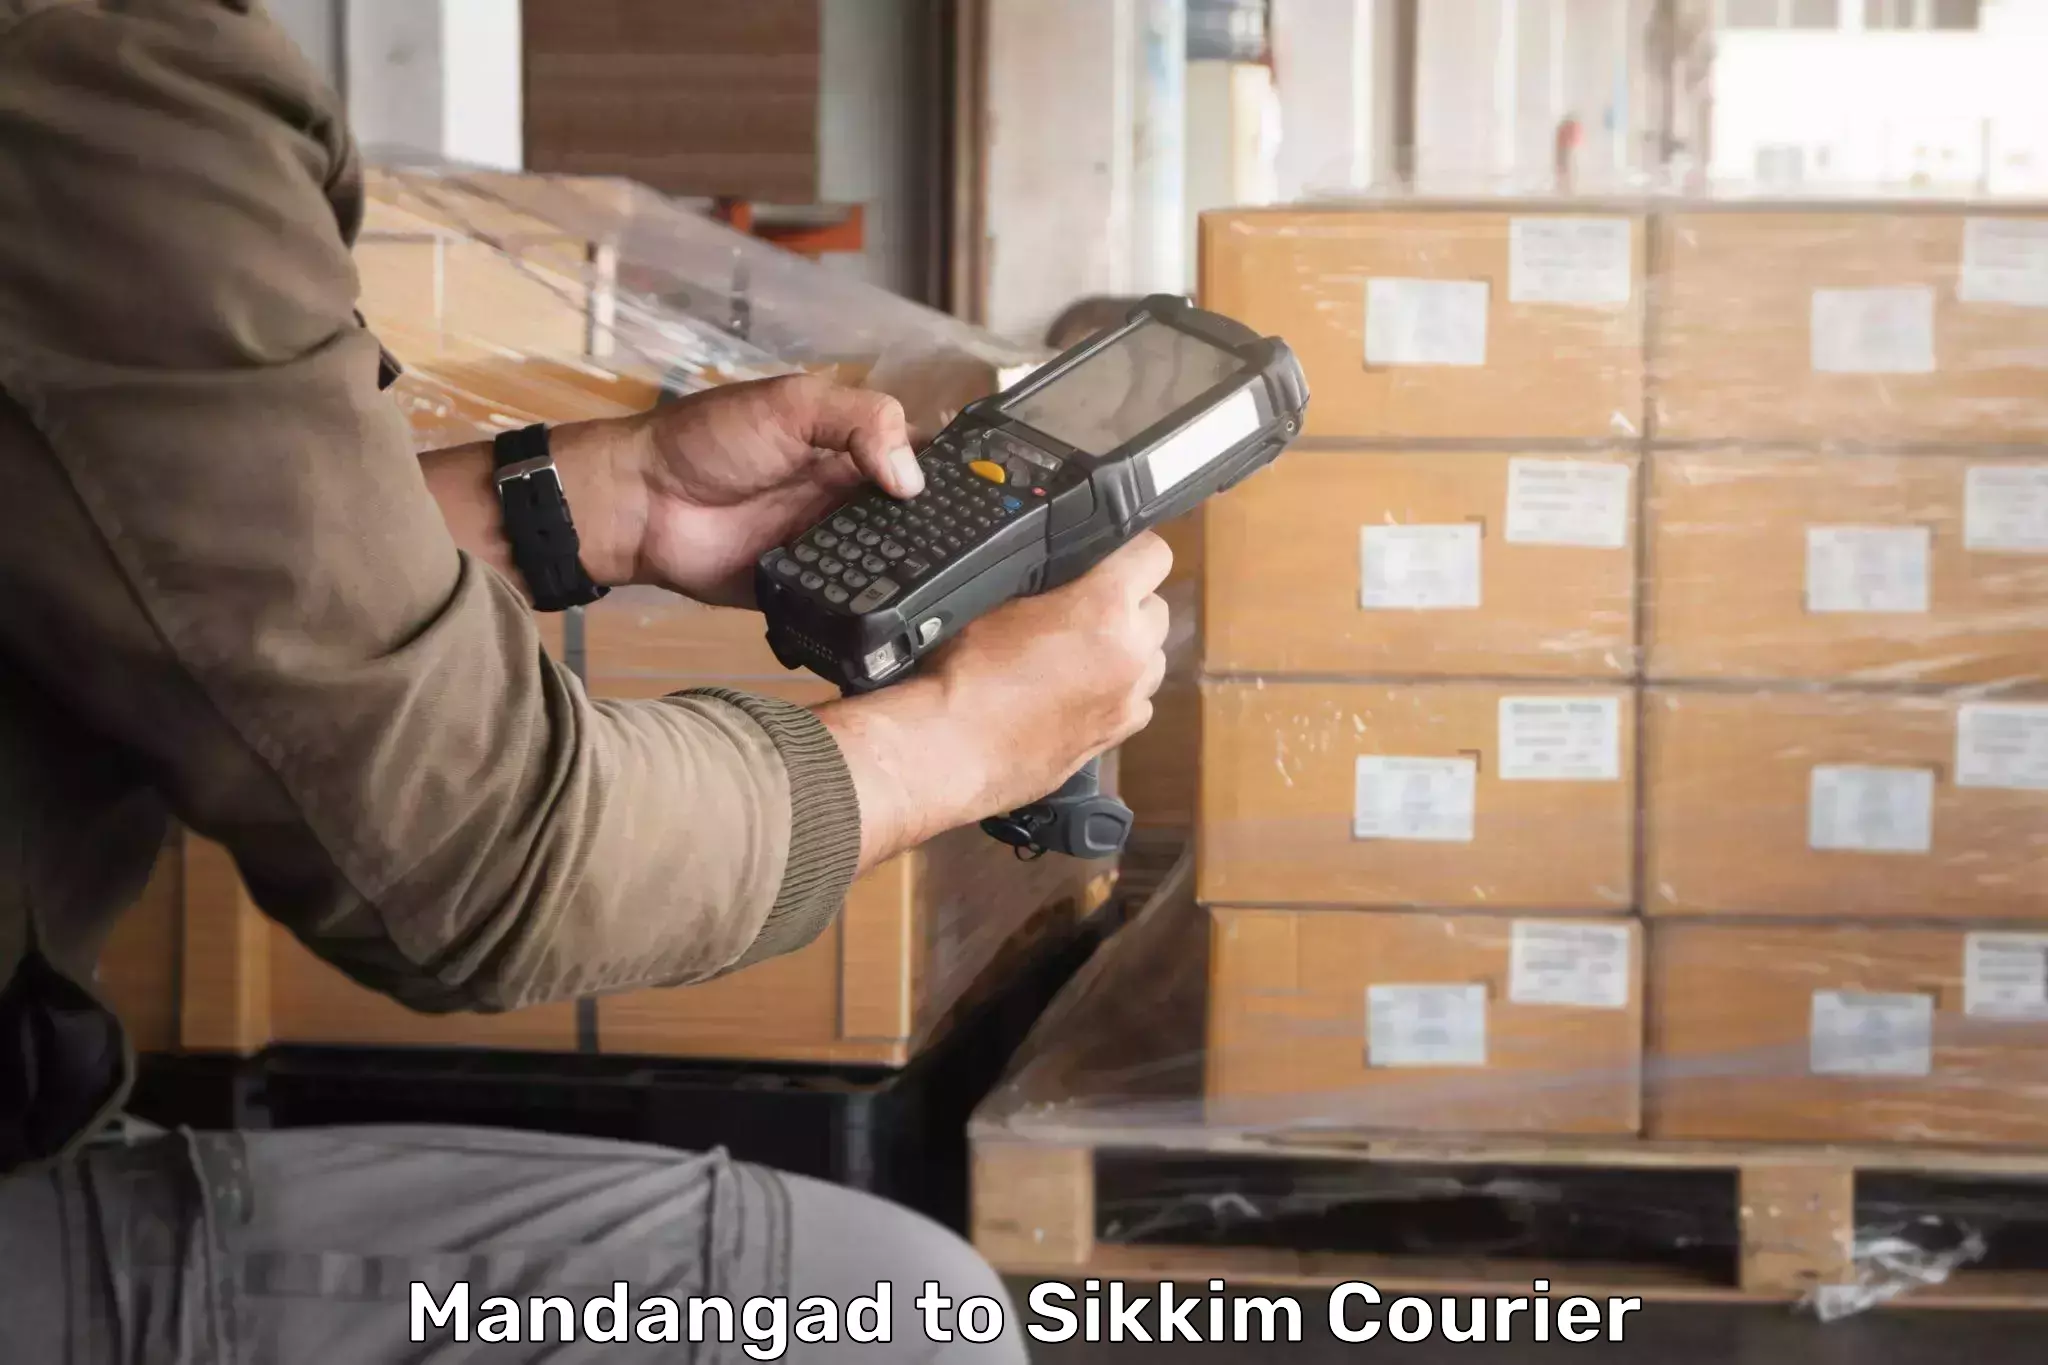 Advanced shipping technology Mandangad to Sikkim